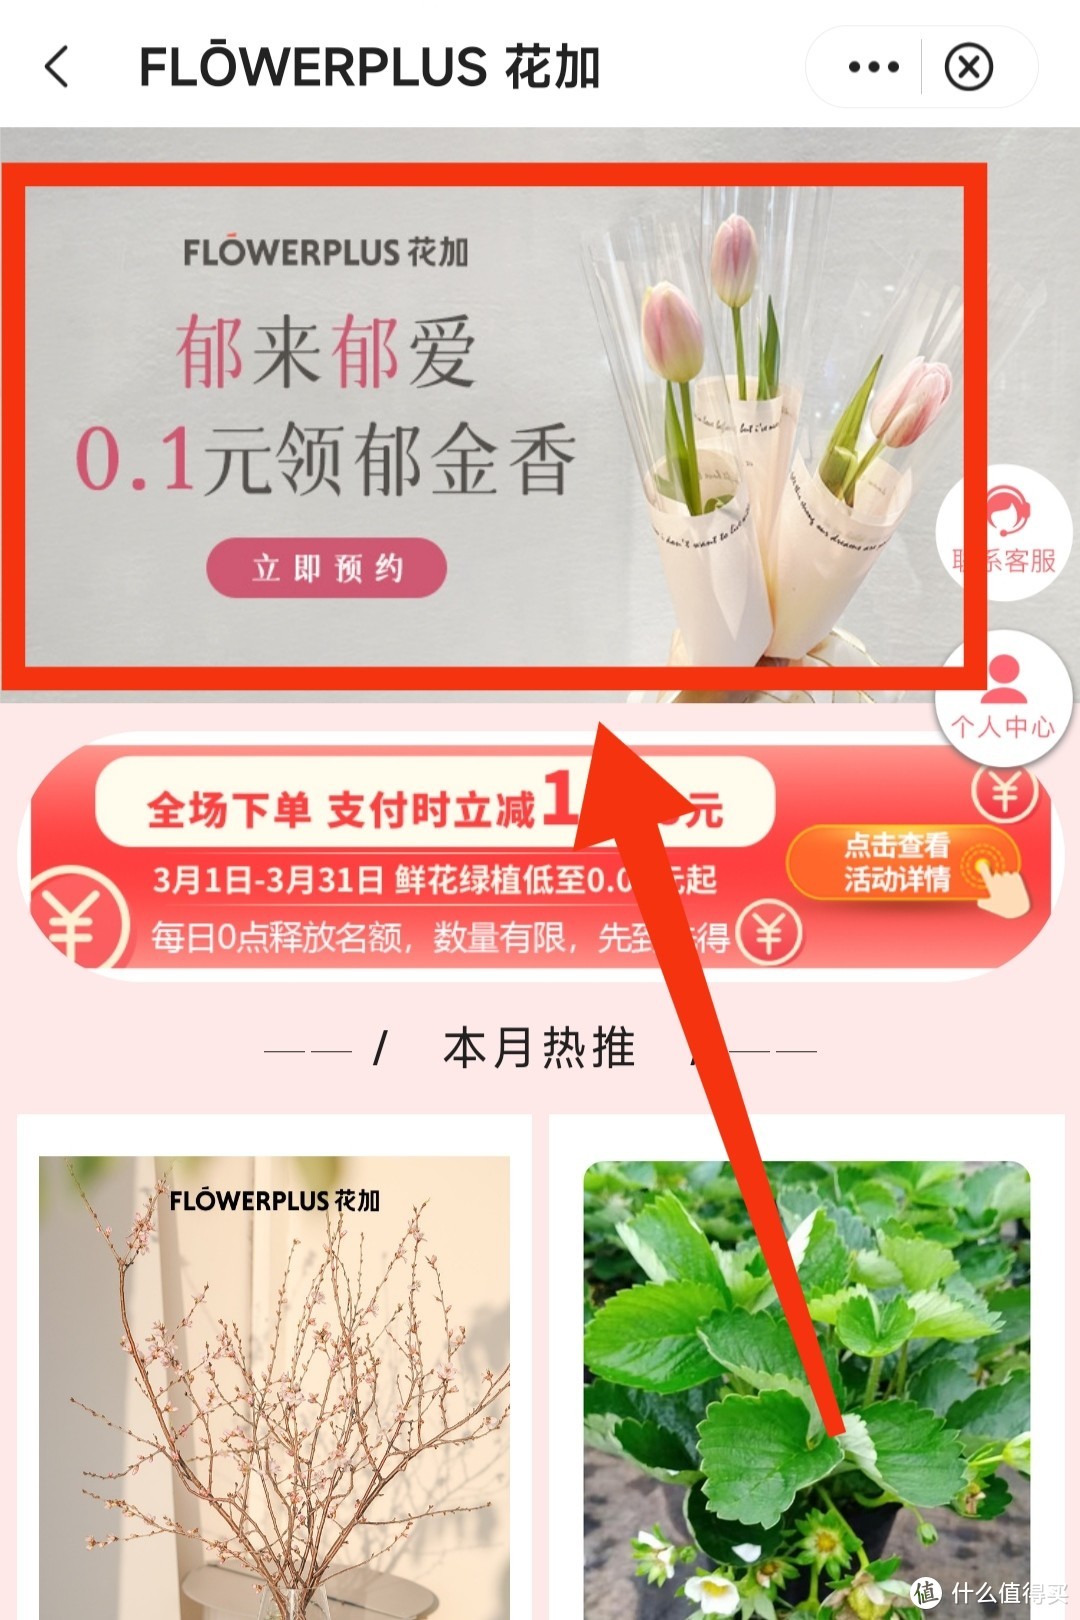 中国银行上海用户福利！0.1元领郁金香或绿植～31号截止～集美们行动起来～